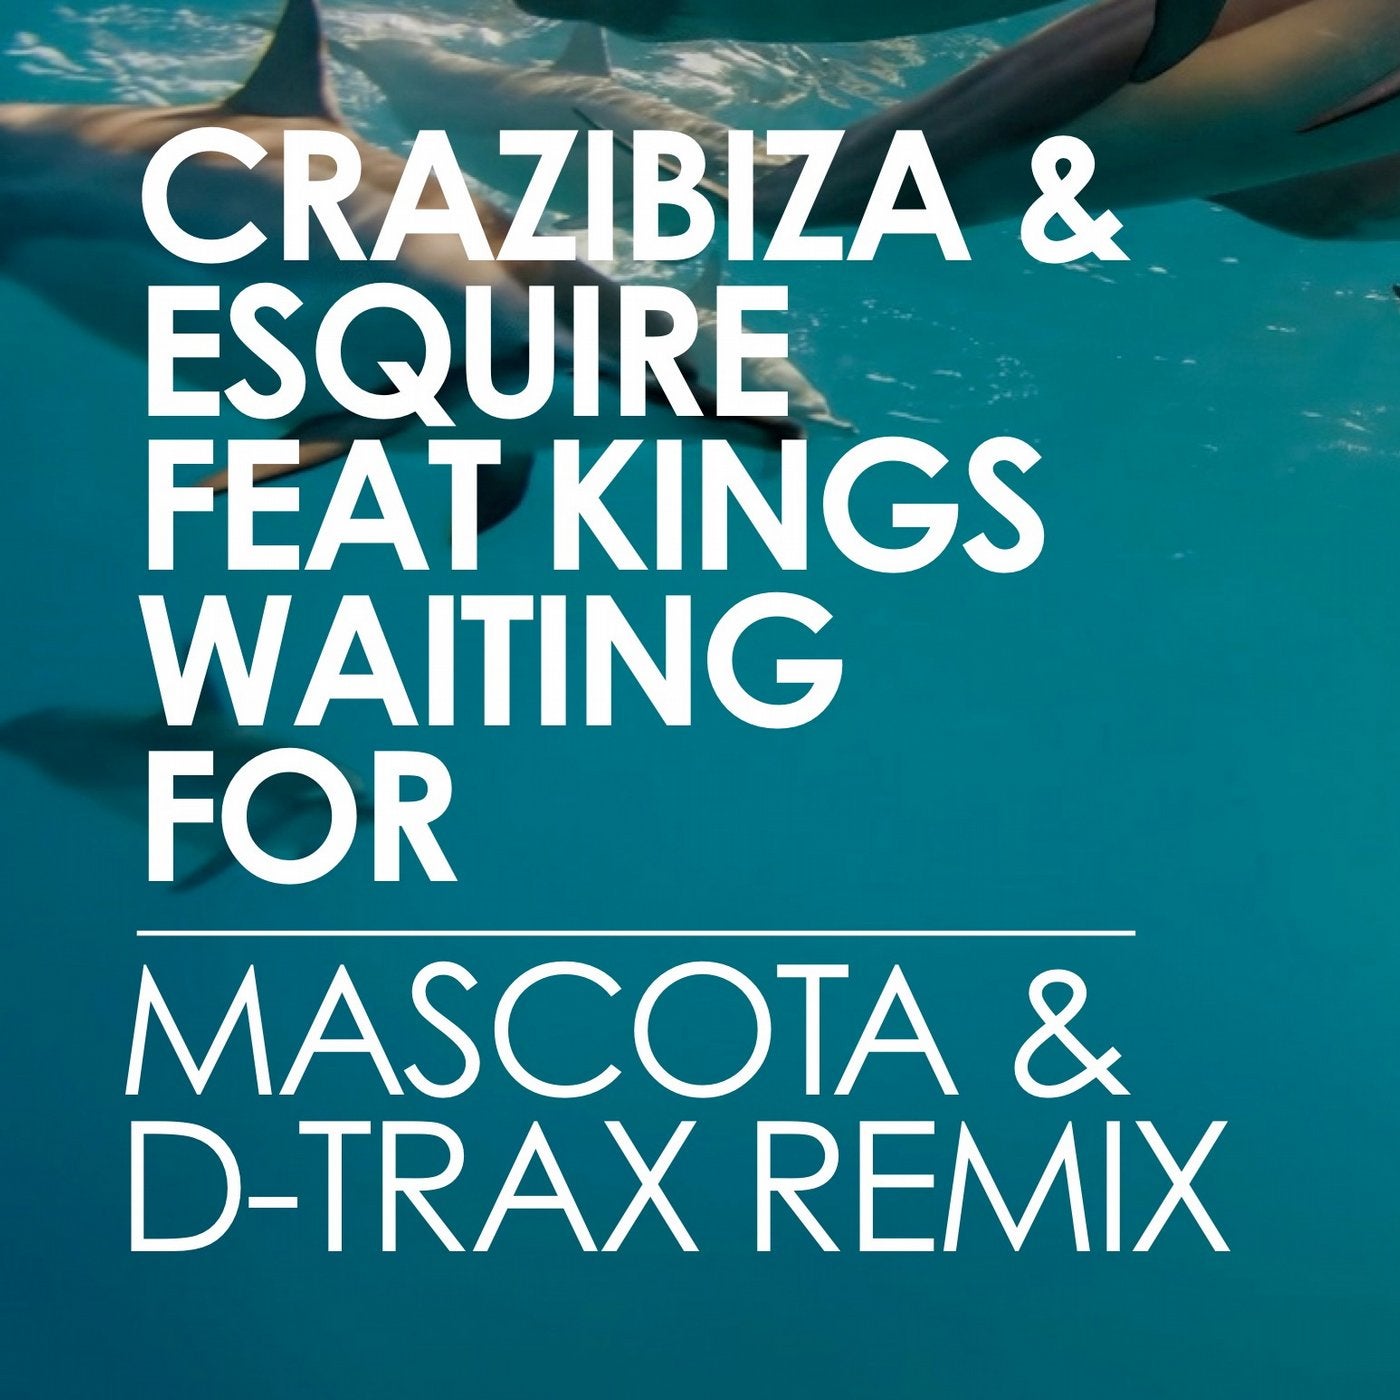 Crazibiza & ESquire Feat Kings